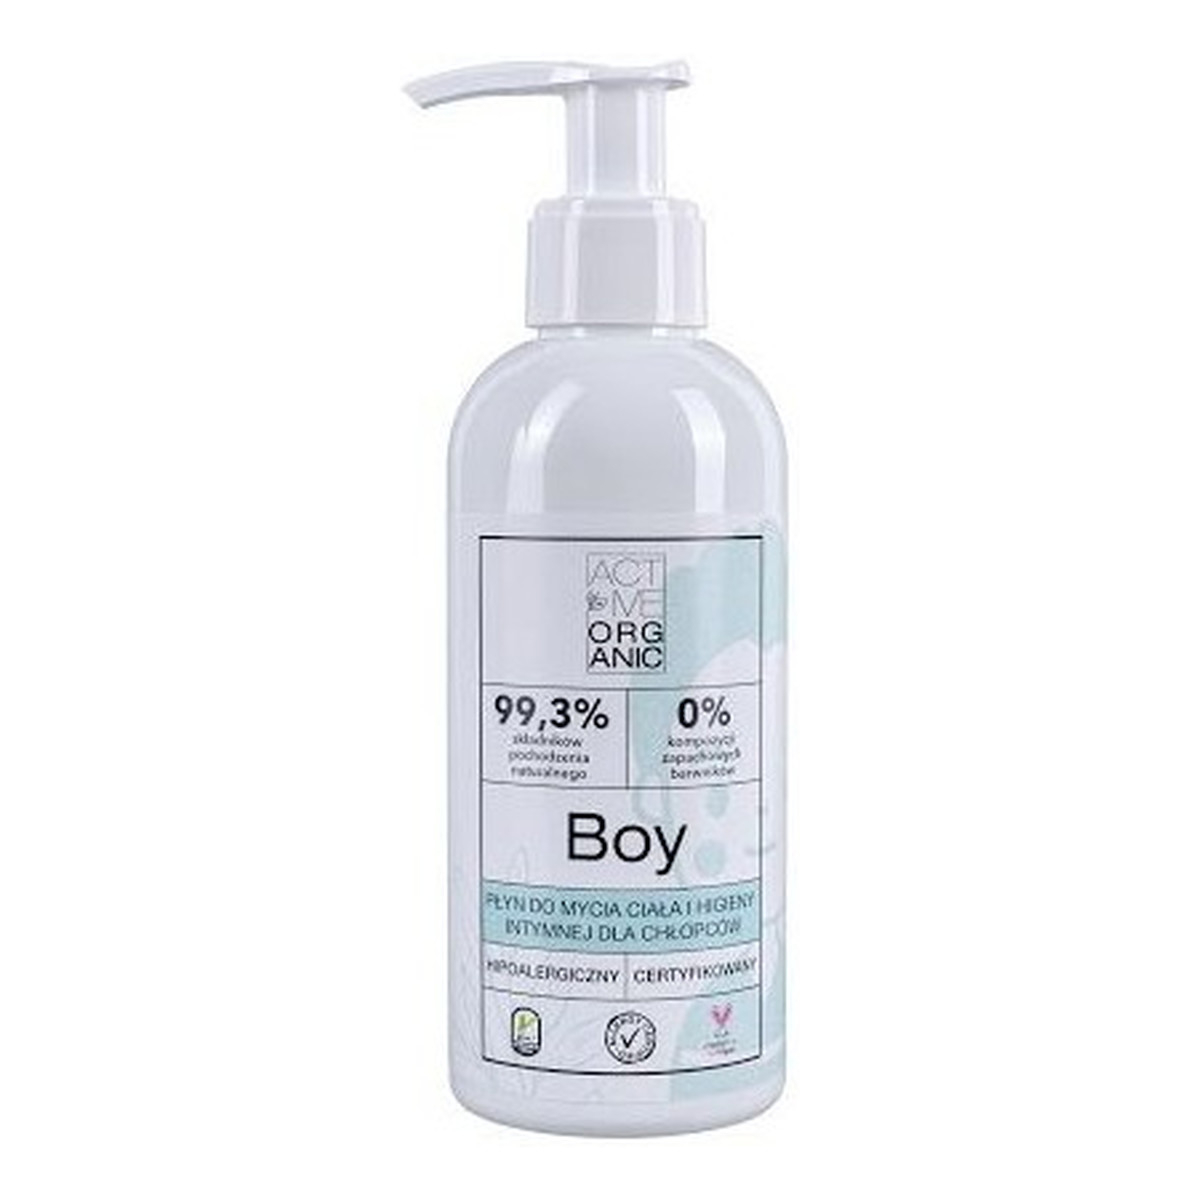 Active Organic Boy płyn do mycia ciała i higieny intymnej dla chłopców 200ml